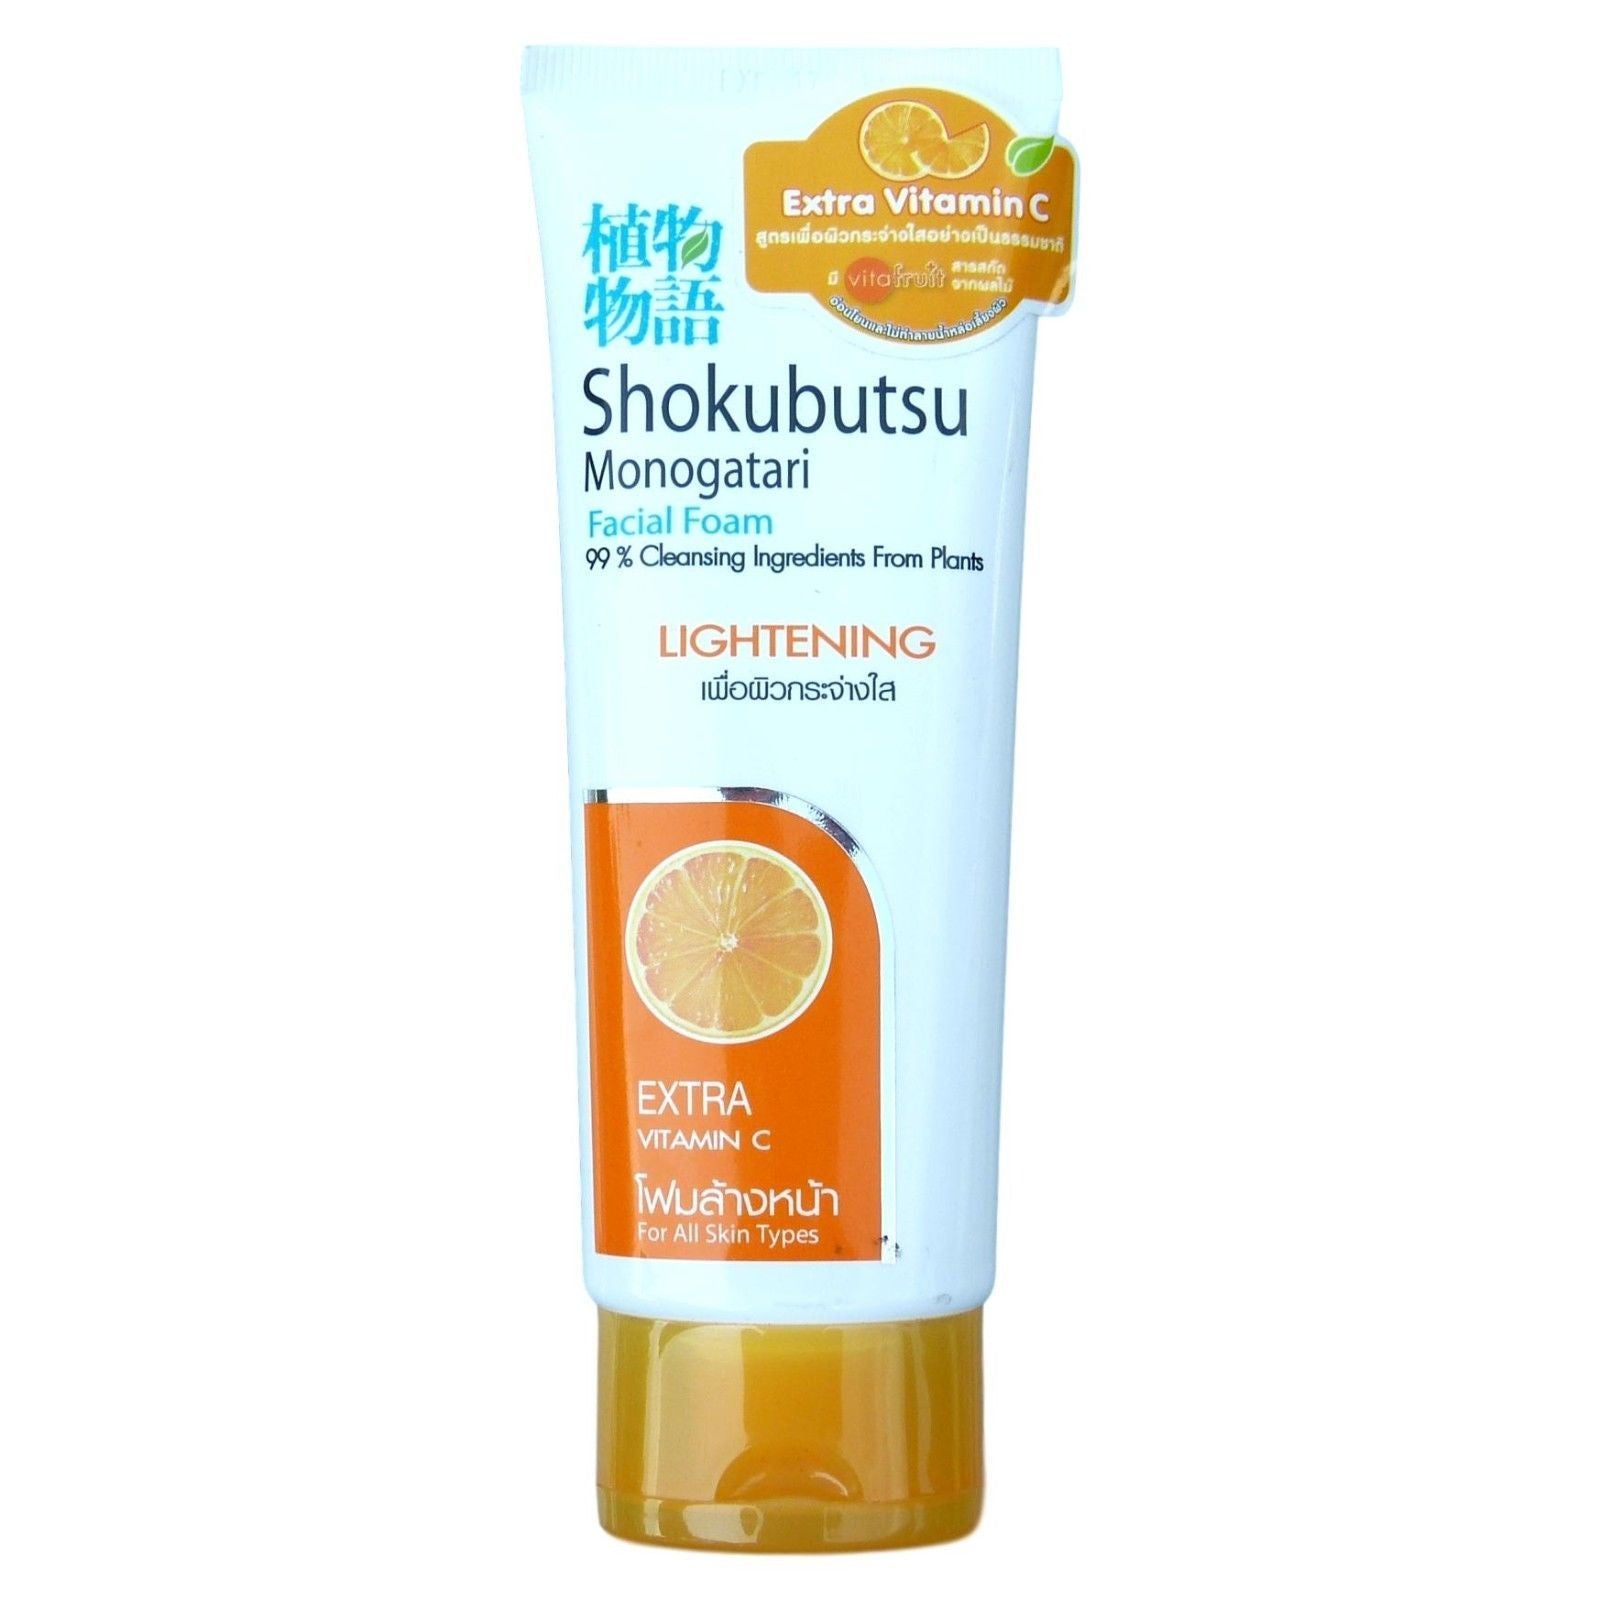 Shokubutsu Monogatari Lightening Facial Foam 100 grams - Asian Beauty Supply